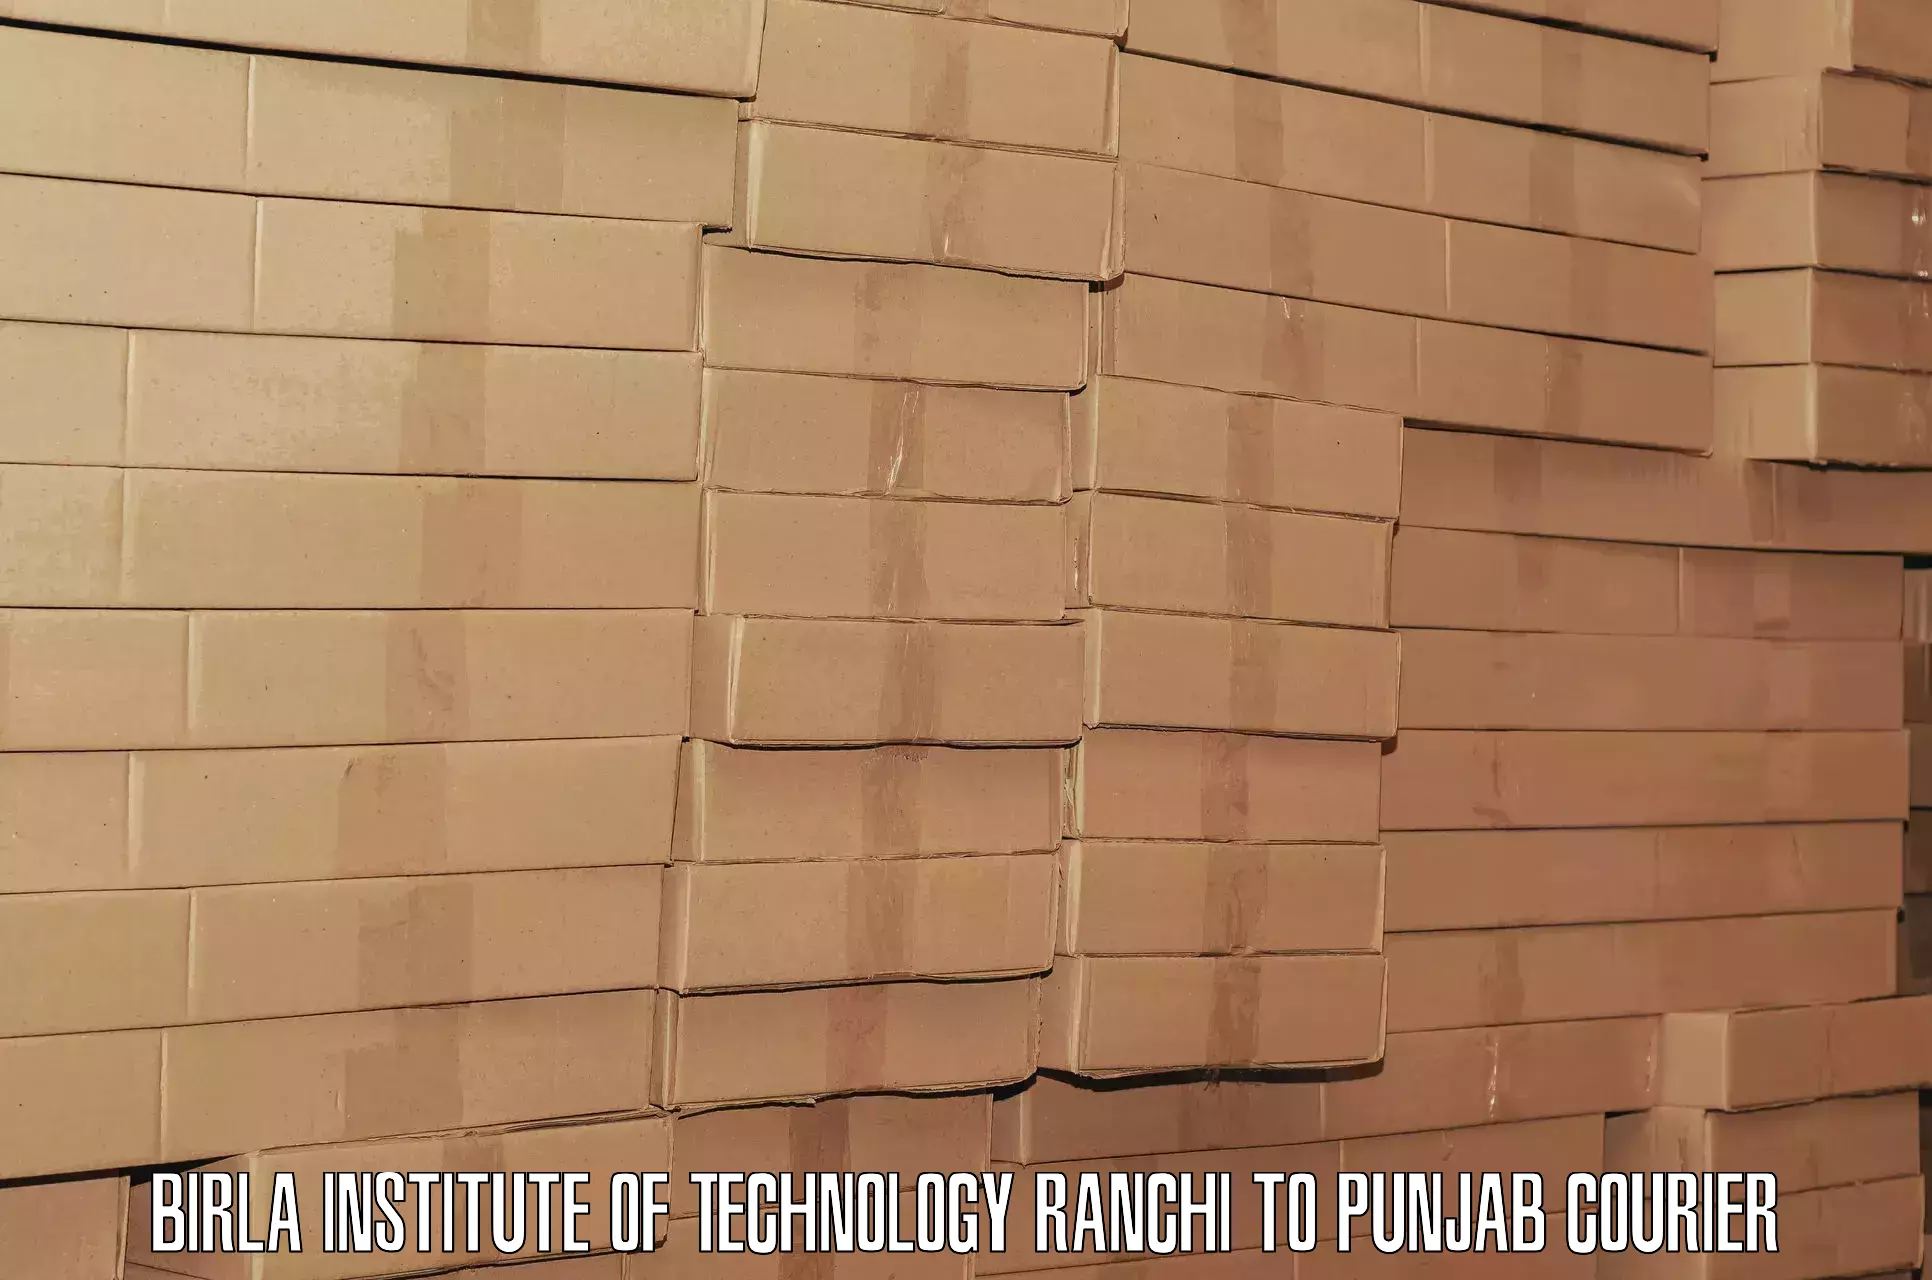 Luggage shipment processing Birla Institute of Technology Ranchi to Nabha